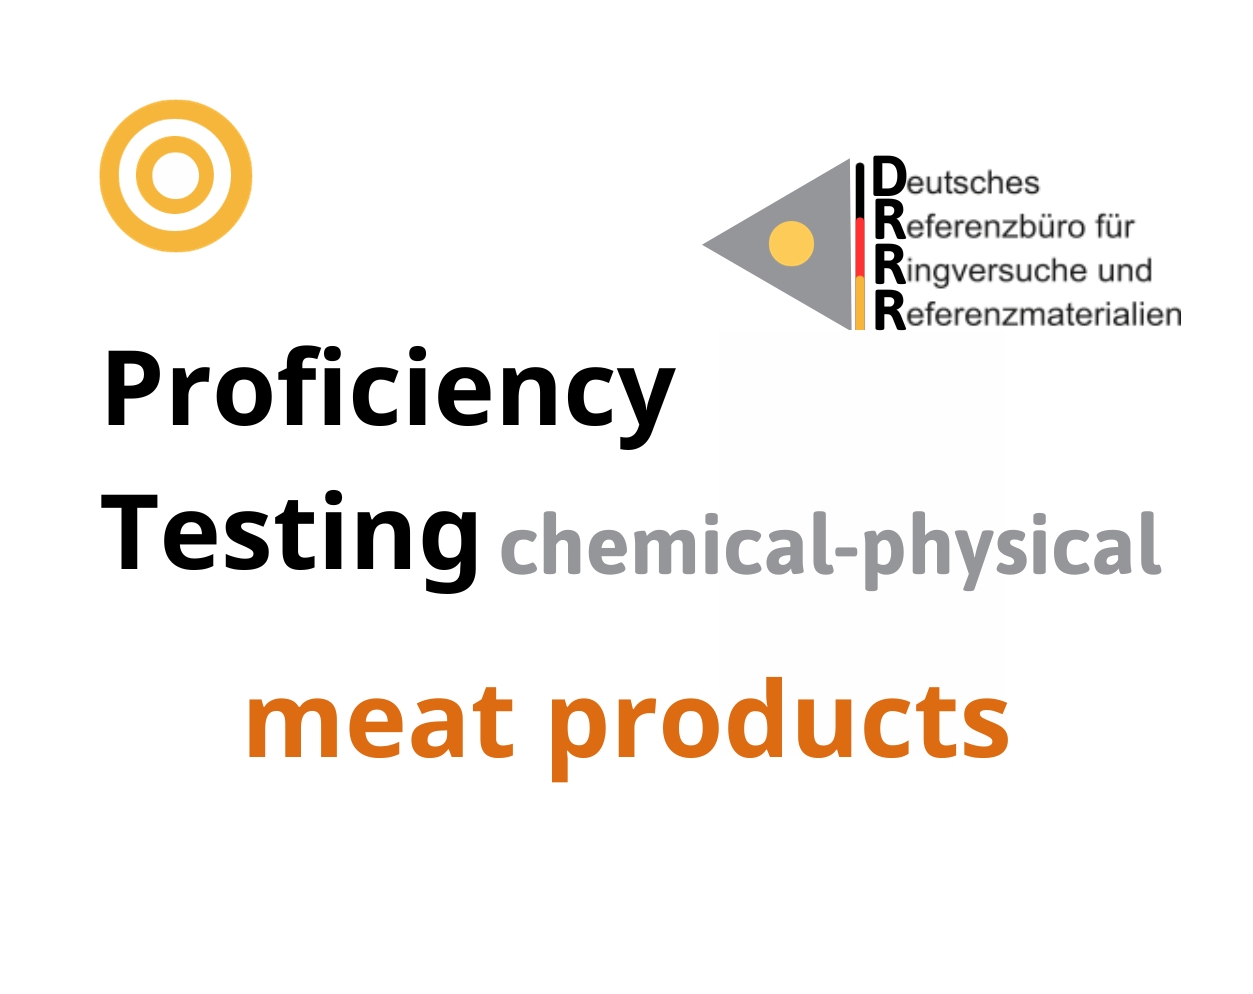 Thử nghiệm thành thạo (ISO 17043) các thông số hoá lý nền mẫu sản phẩm thịt (meat products) Hãng DRRR, Đức